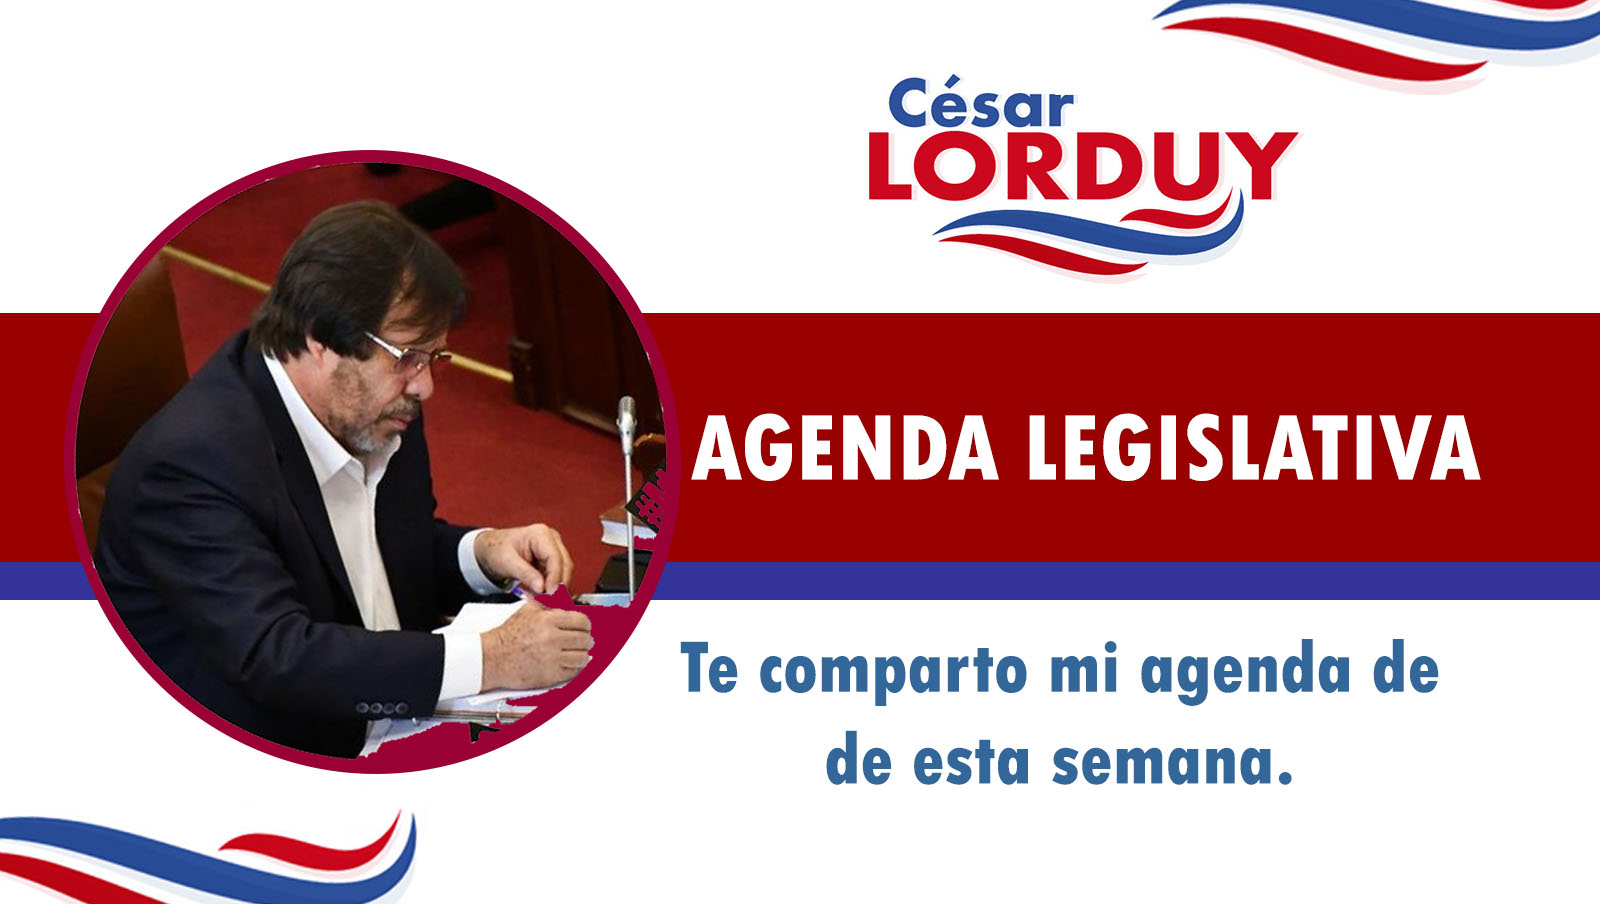 Cesar Lorduy comparte su agenda legislativa en la Cámara de Representantes del 17 al 21 de junio 2